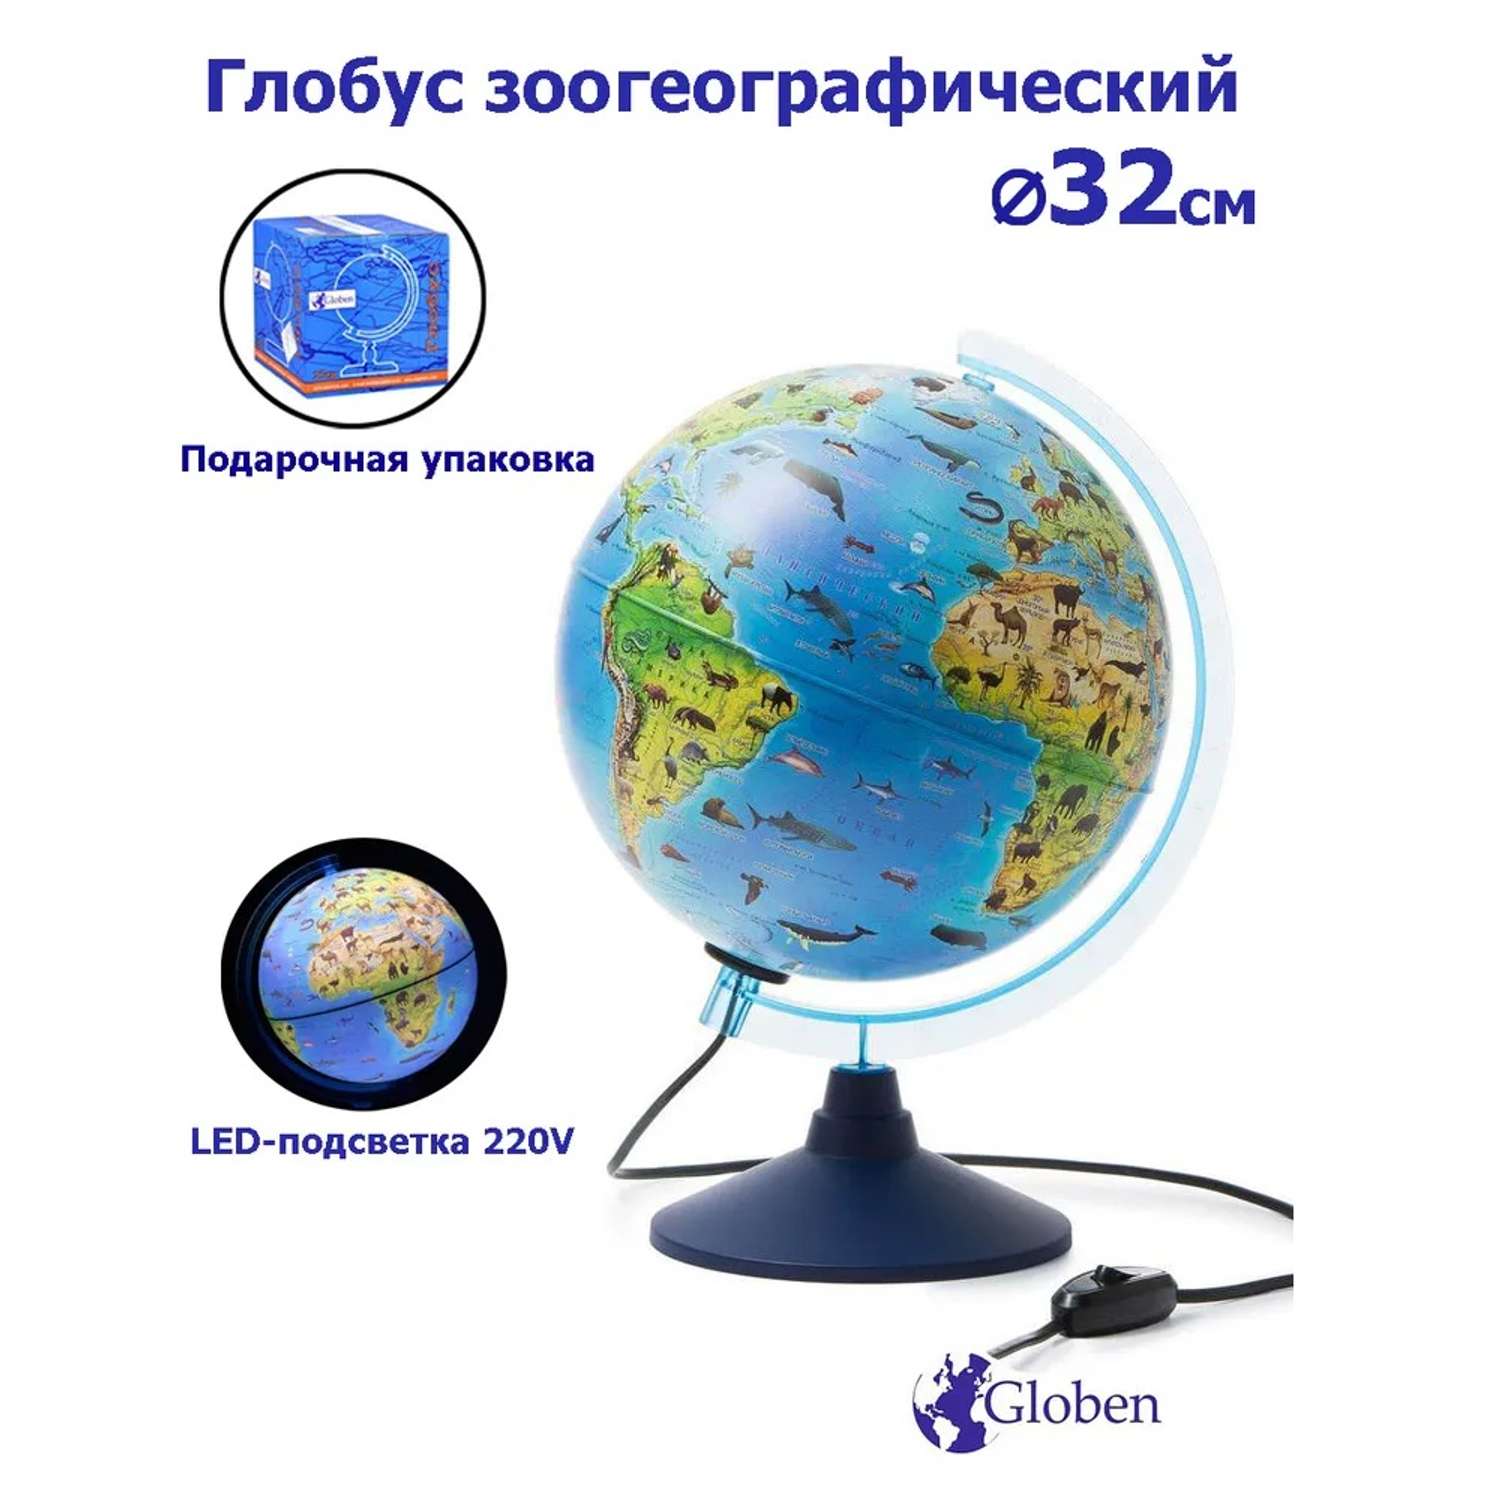 Глобус Globen Зоогеографический детский с LED-подсветкой 32 см - фото 1